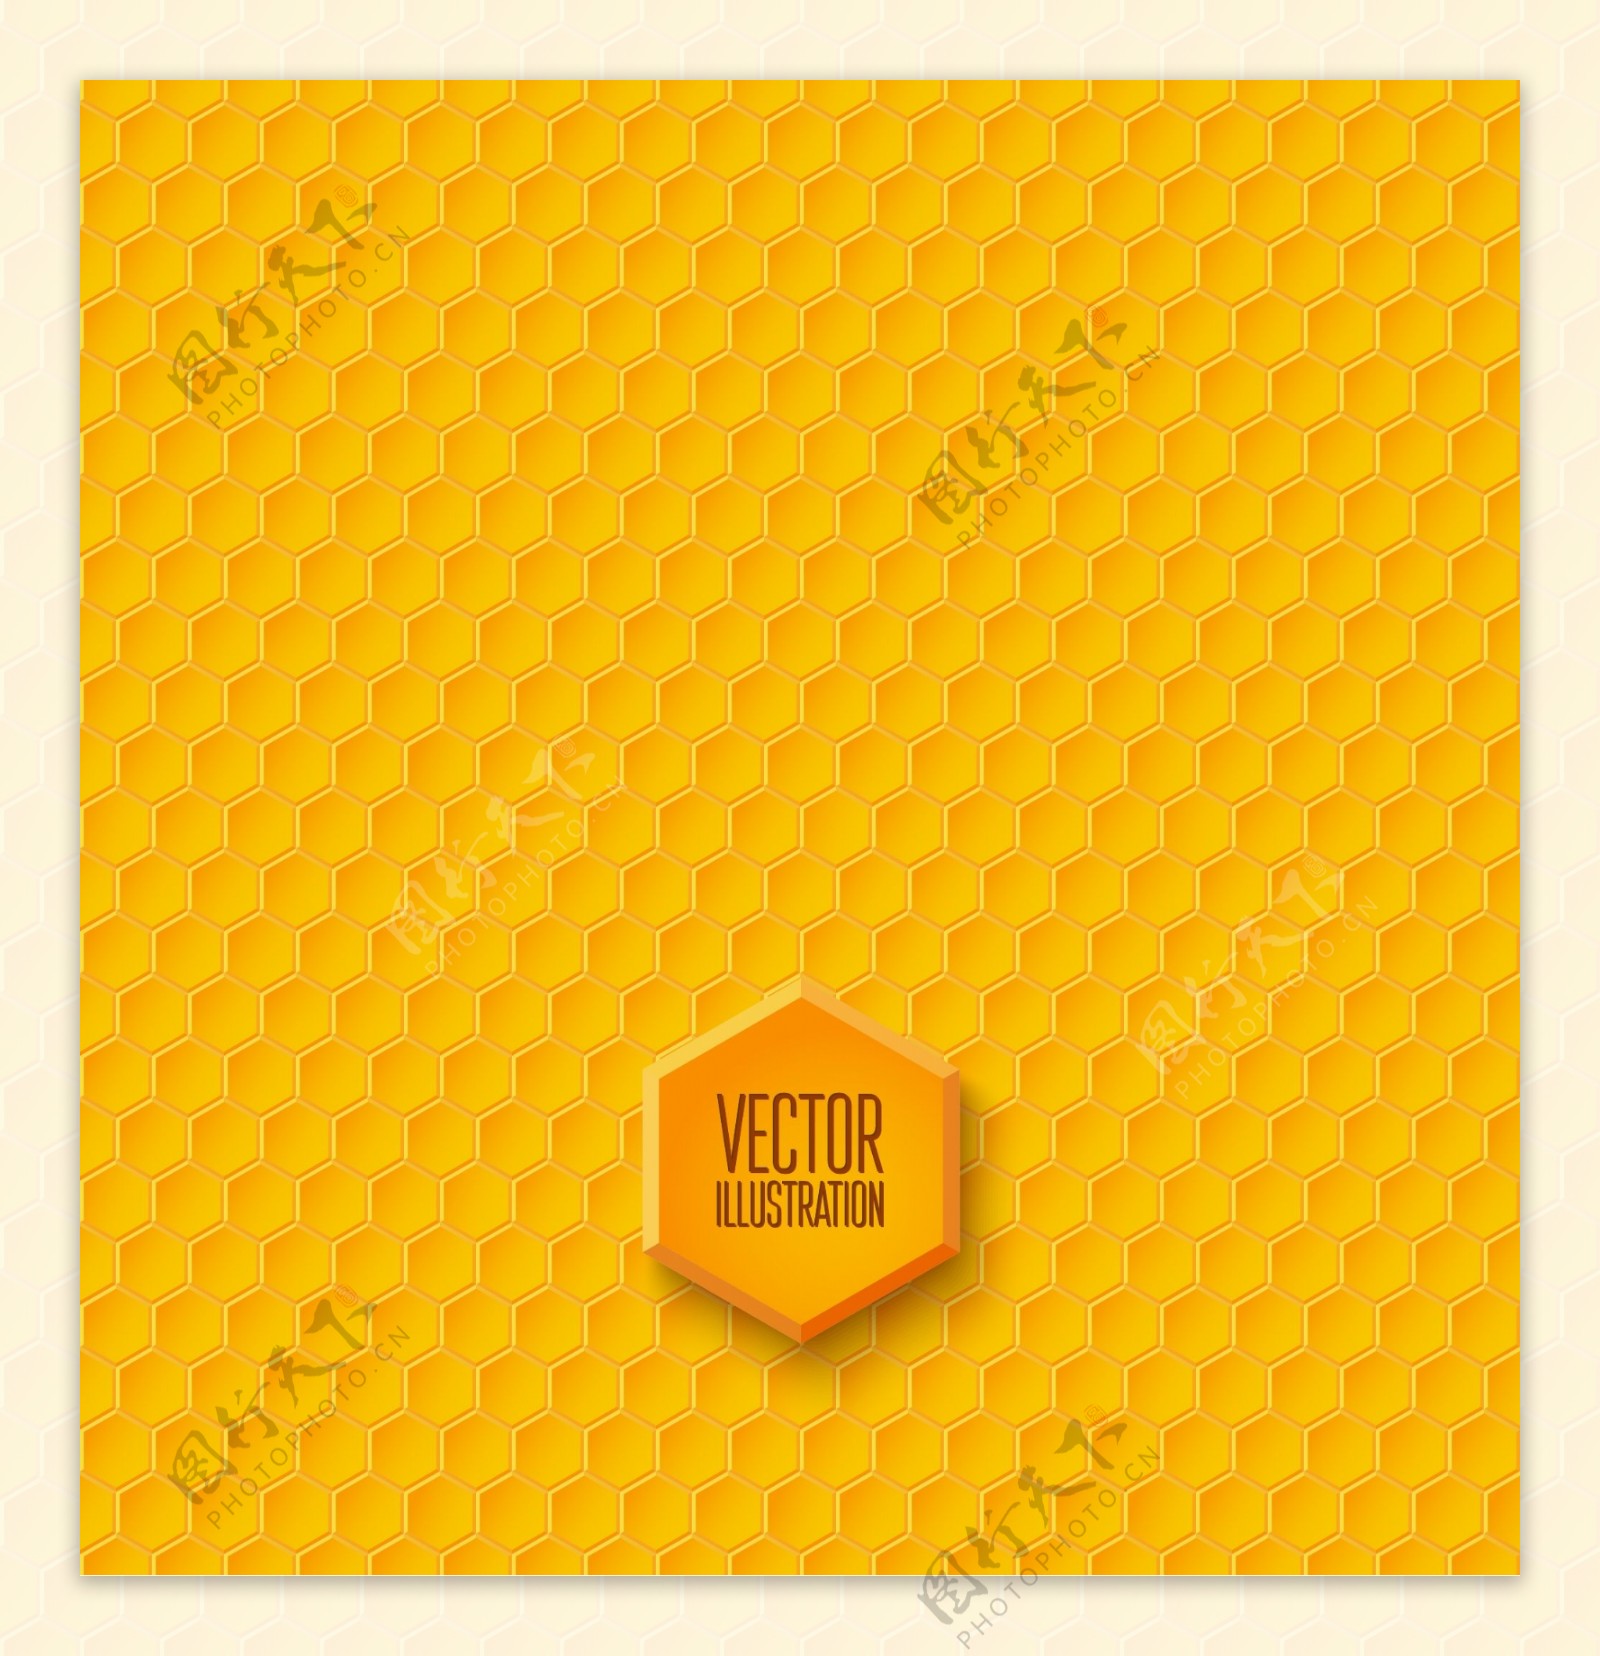 黄色蜂窝形无缝背景矢量素材.